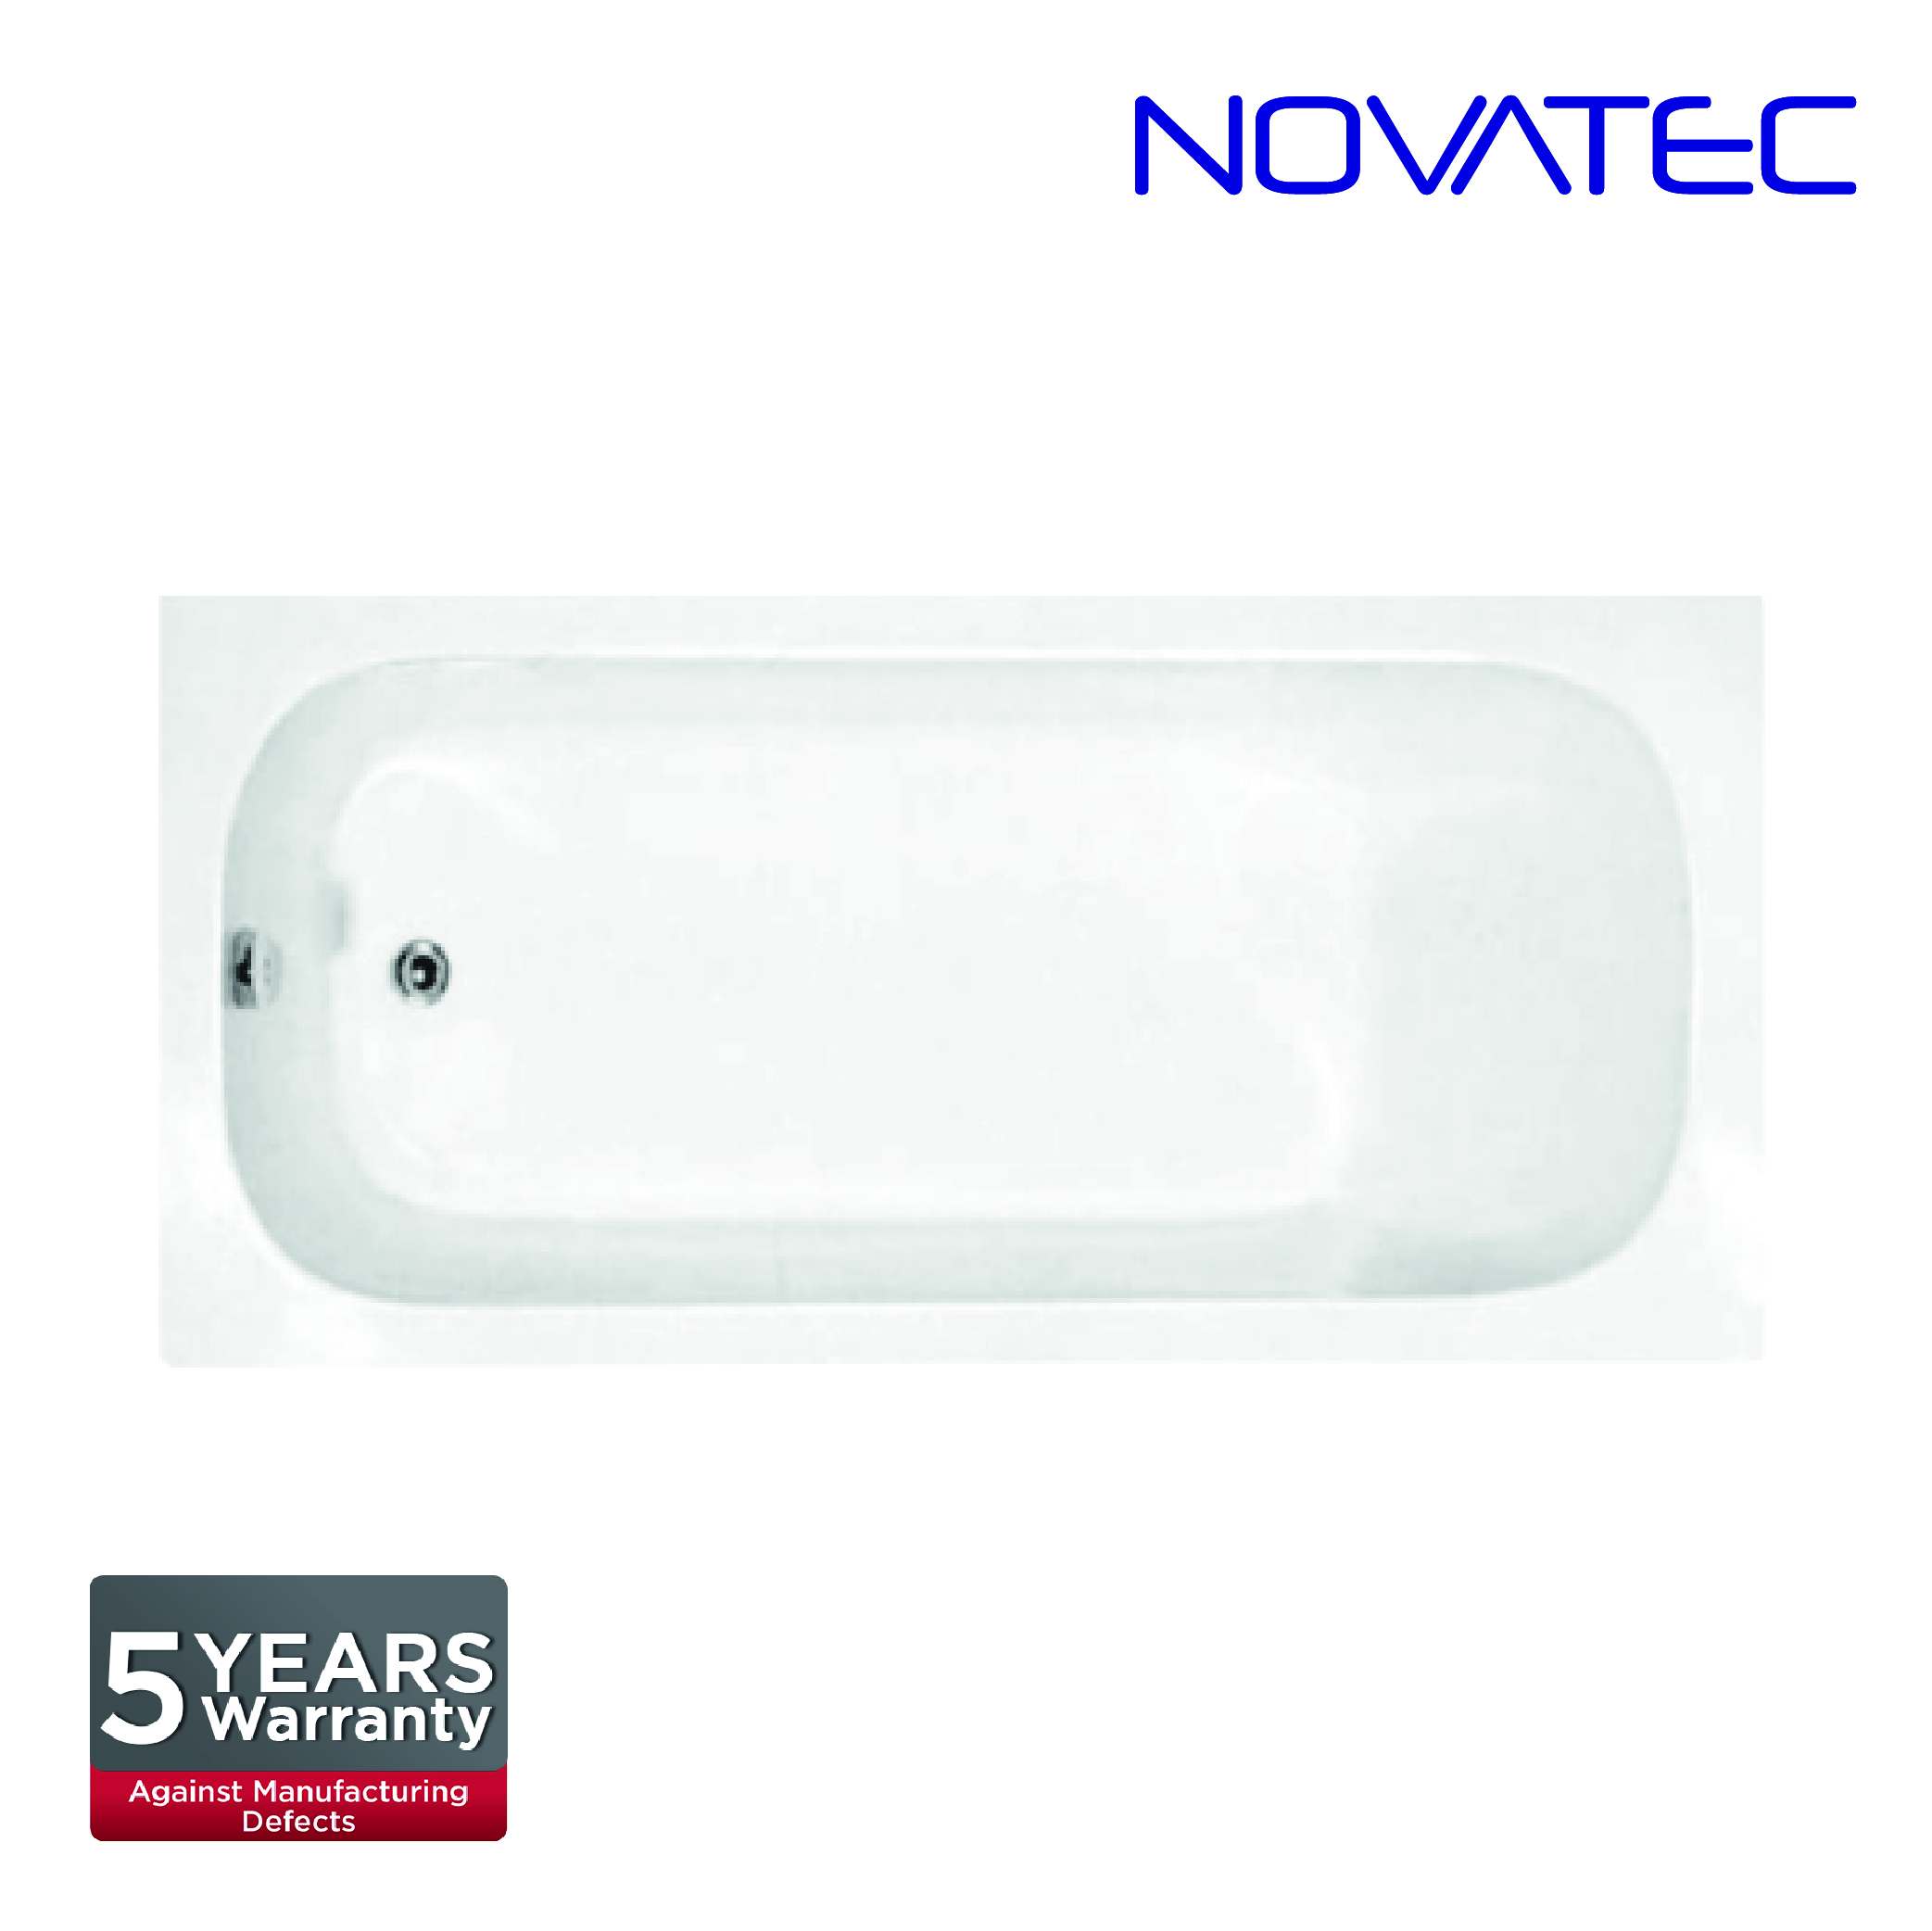 Novatec SW Rome  Bath Tub AT-BT160307A